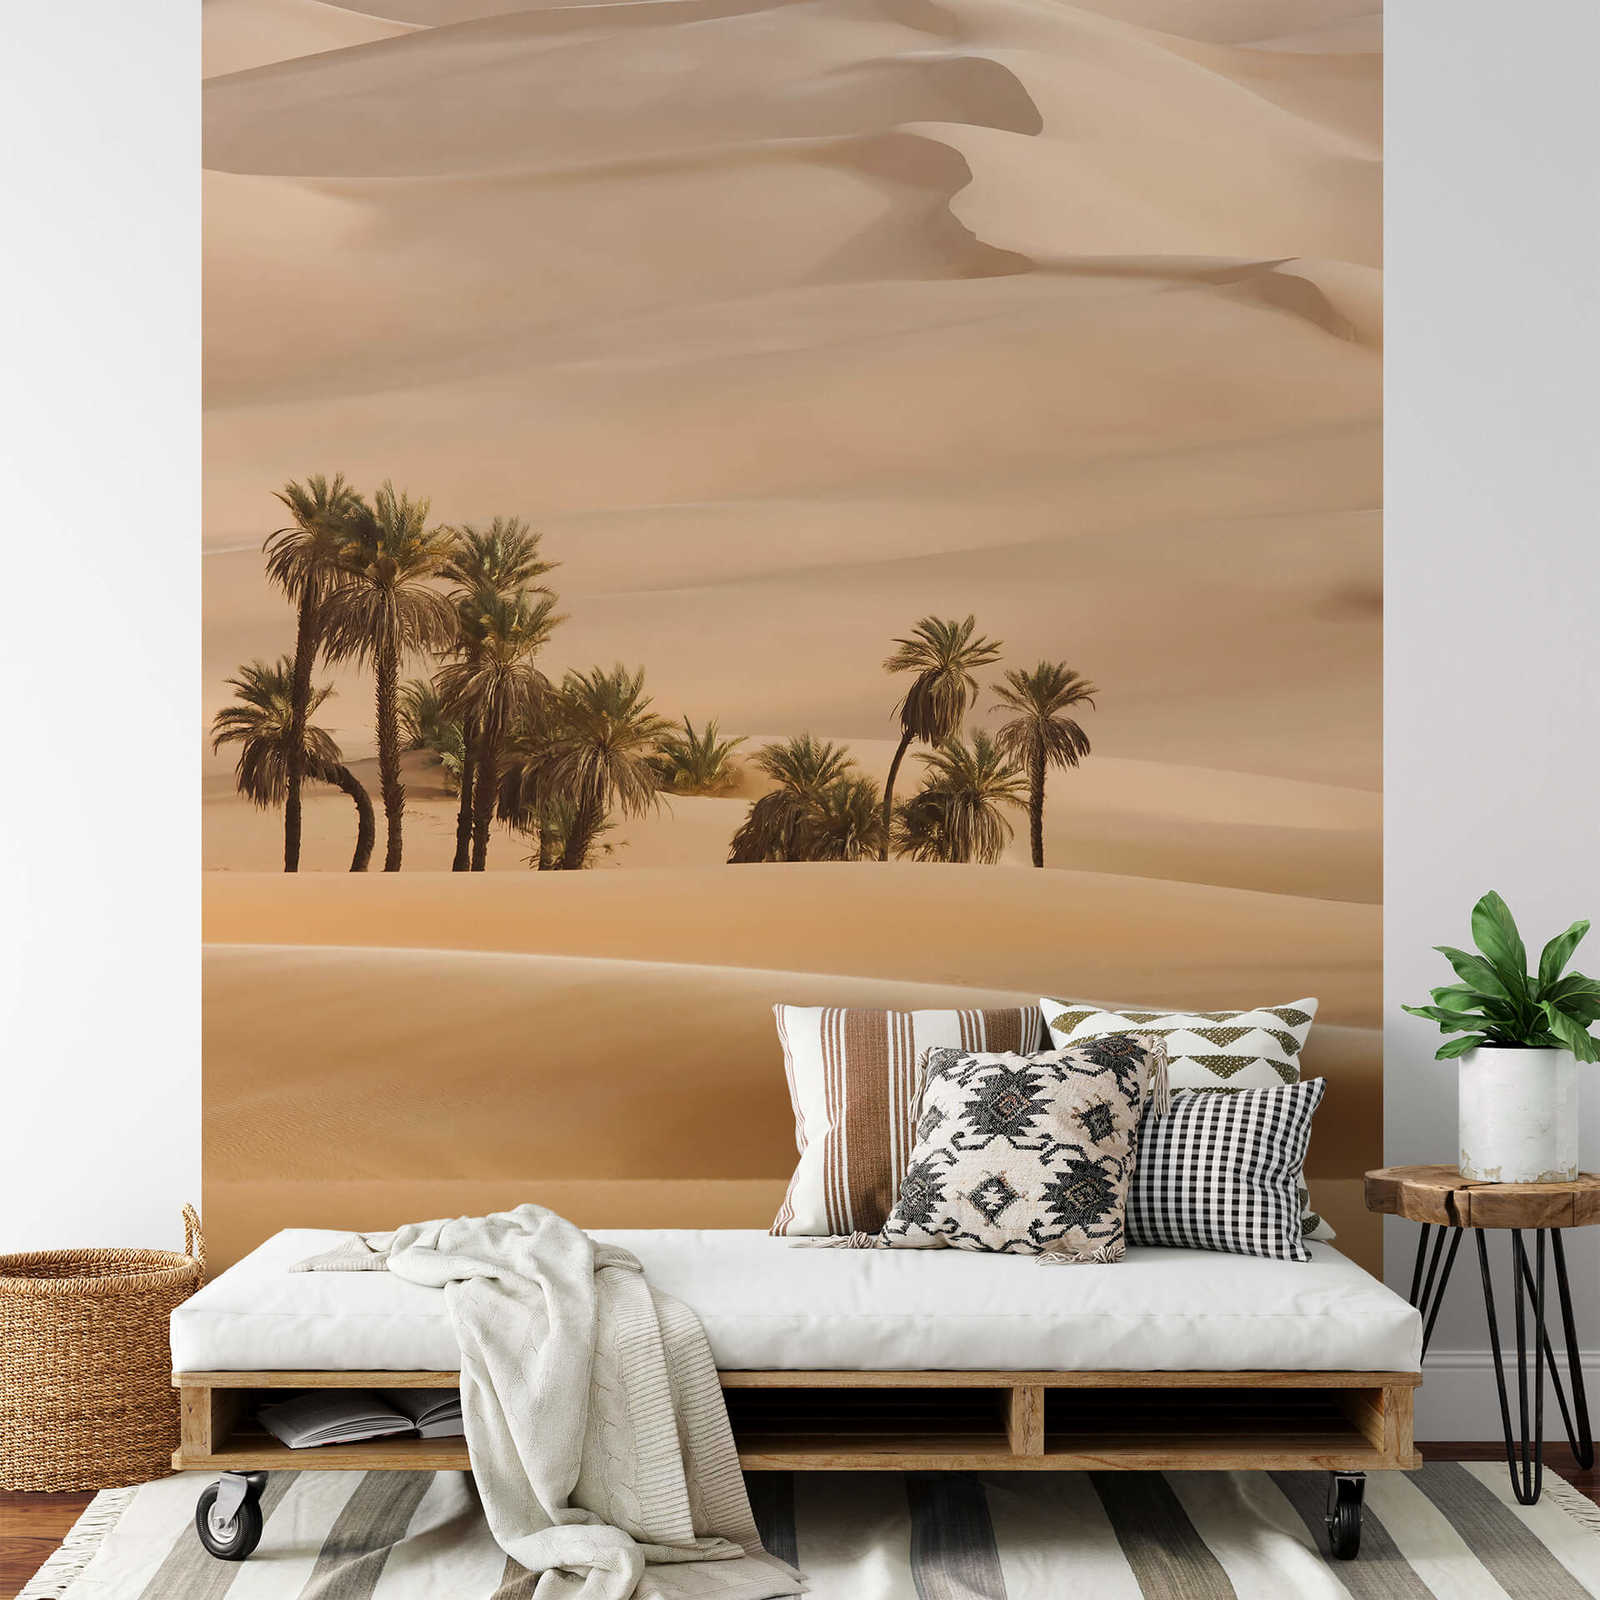             Narrow photo wallpaper dune in beige
        